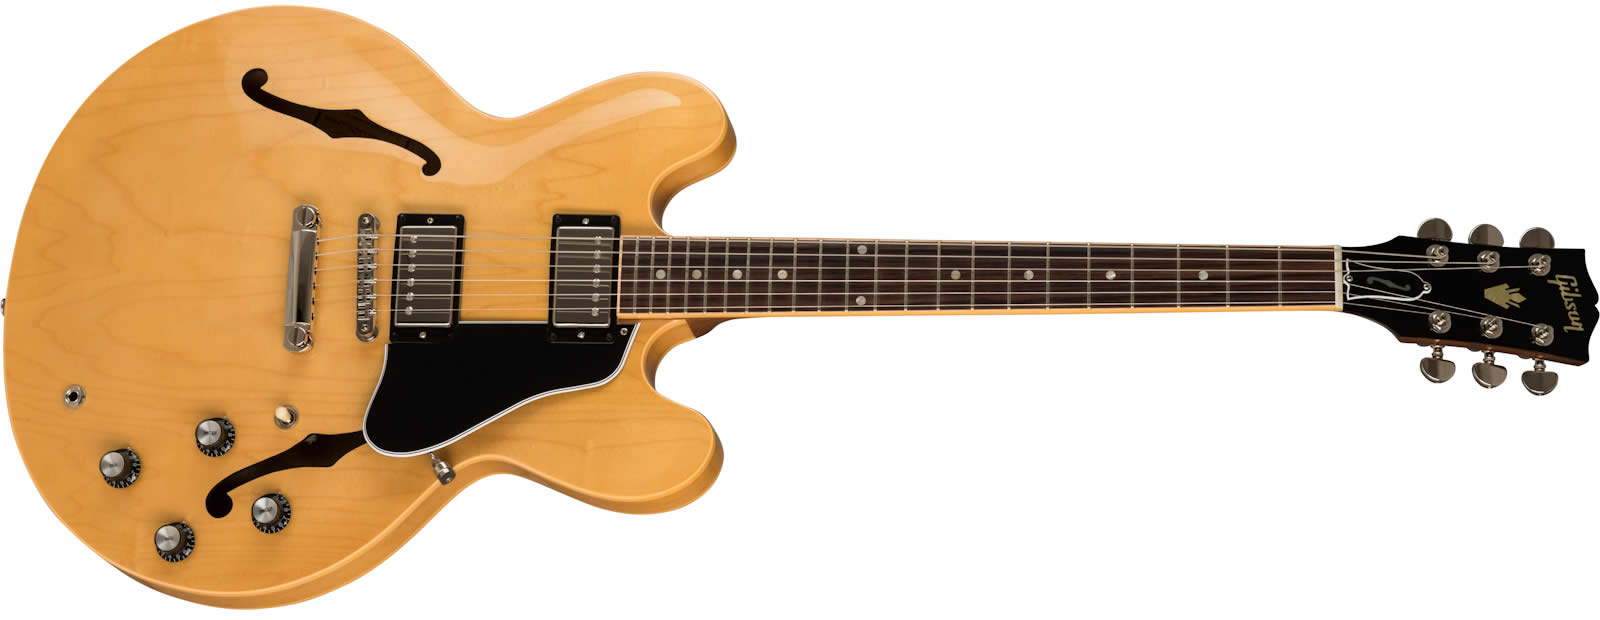 Gibson 57 Classic ピックアップ搭載 Epiphone ES-335 Type セミアコースティック Dot Studio セミアコ ギブソン  57クラシック PU - 楽器、器材